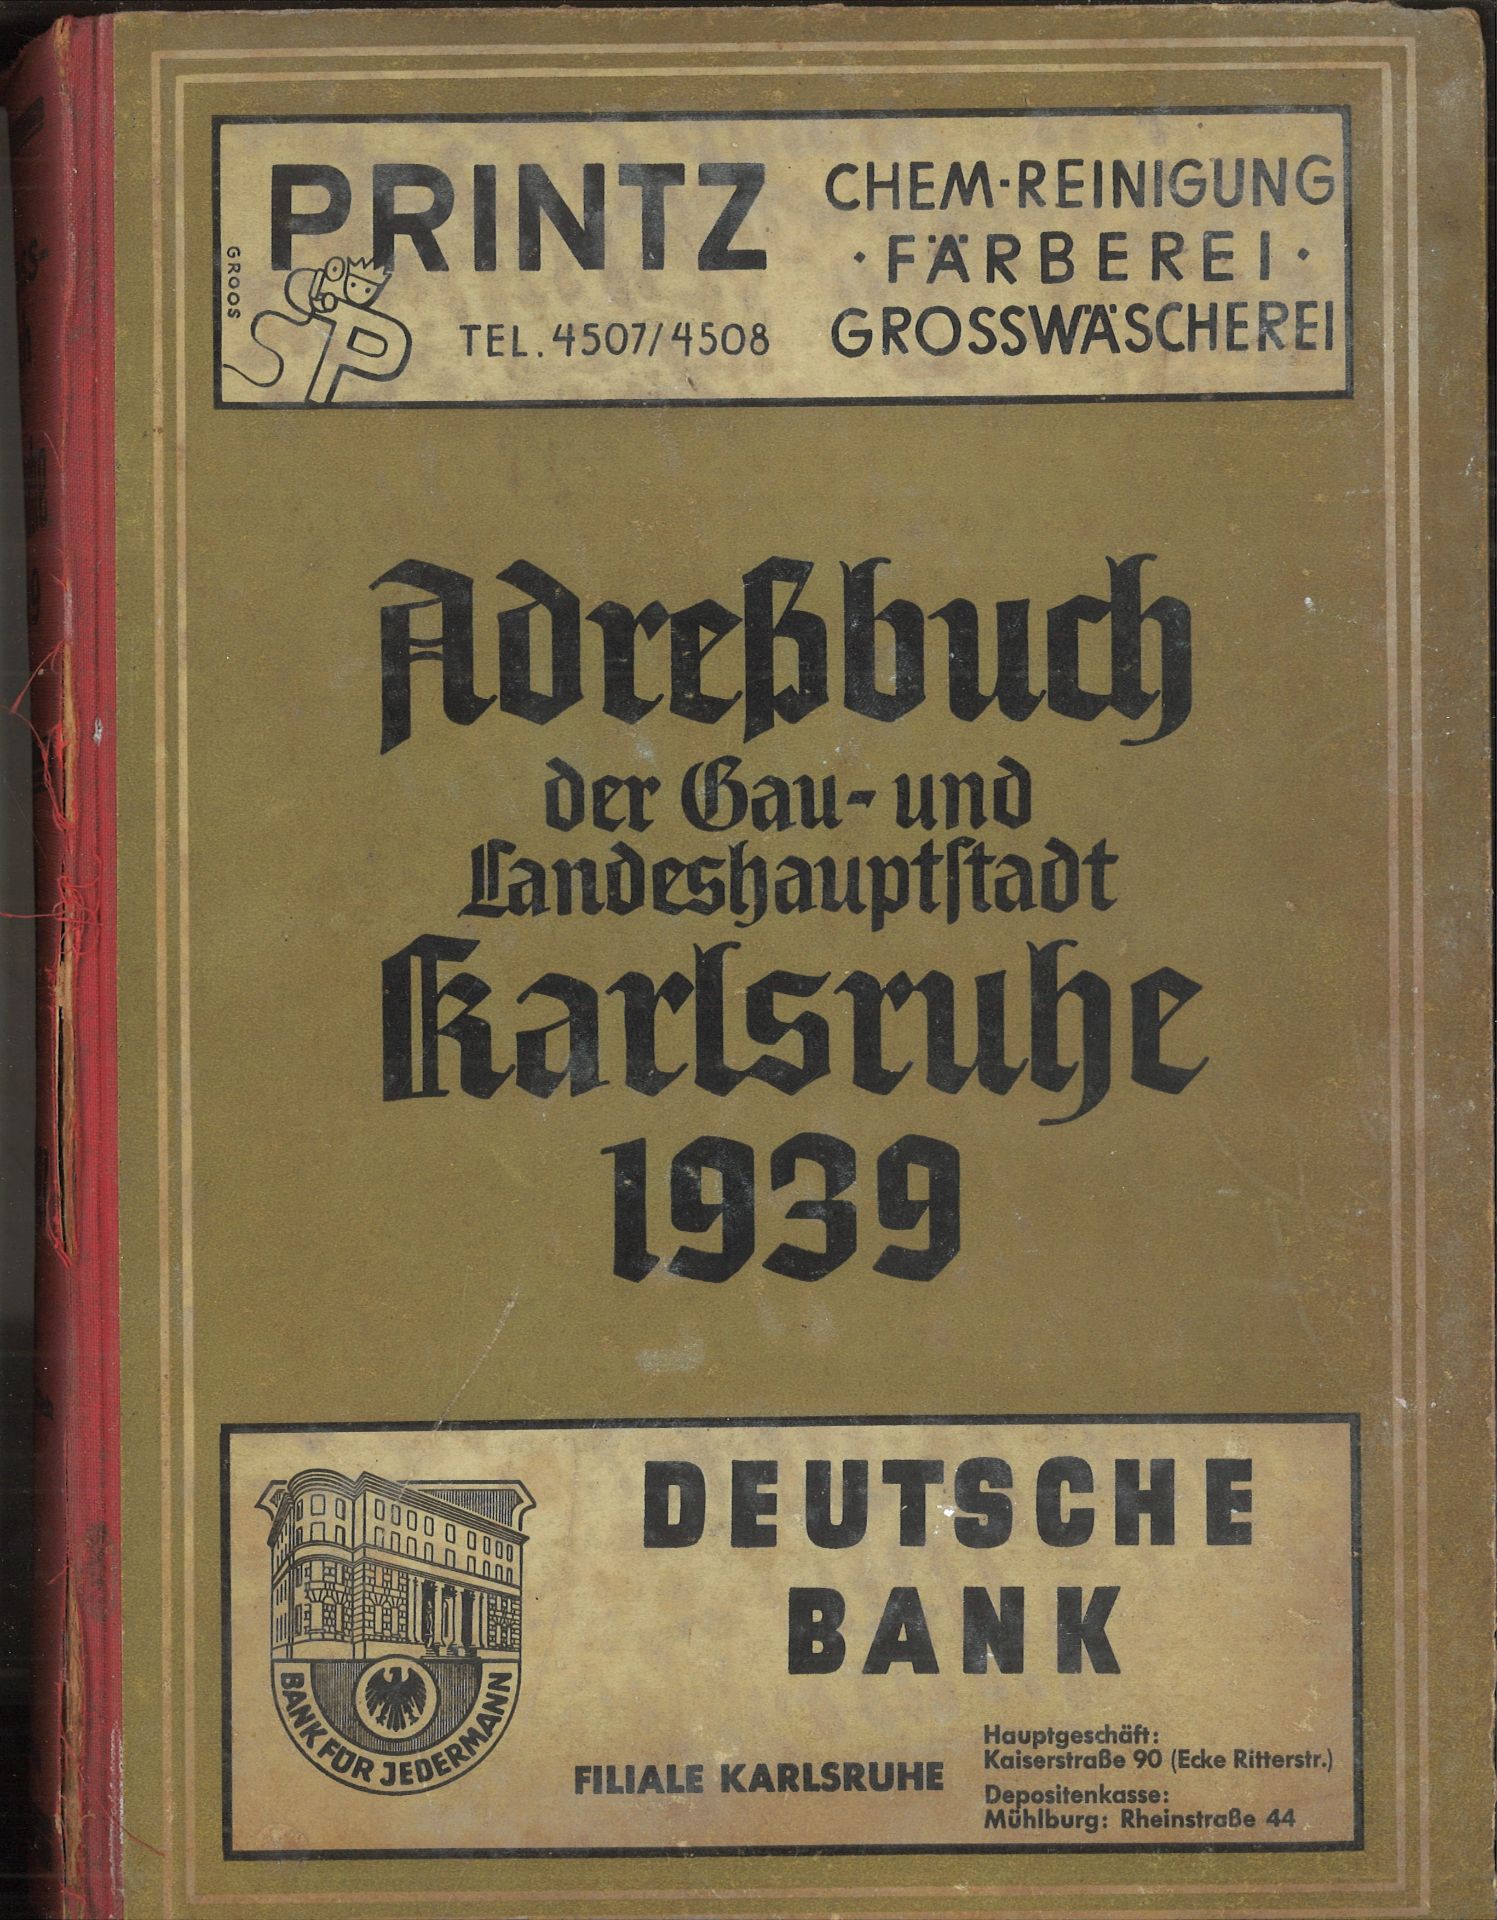 Adressbuch der Stadt Karlsruhe von 1939, sechsundsechzigster Jahrgang, Adressbuchverlag G. Braun,